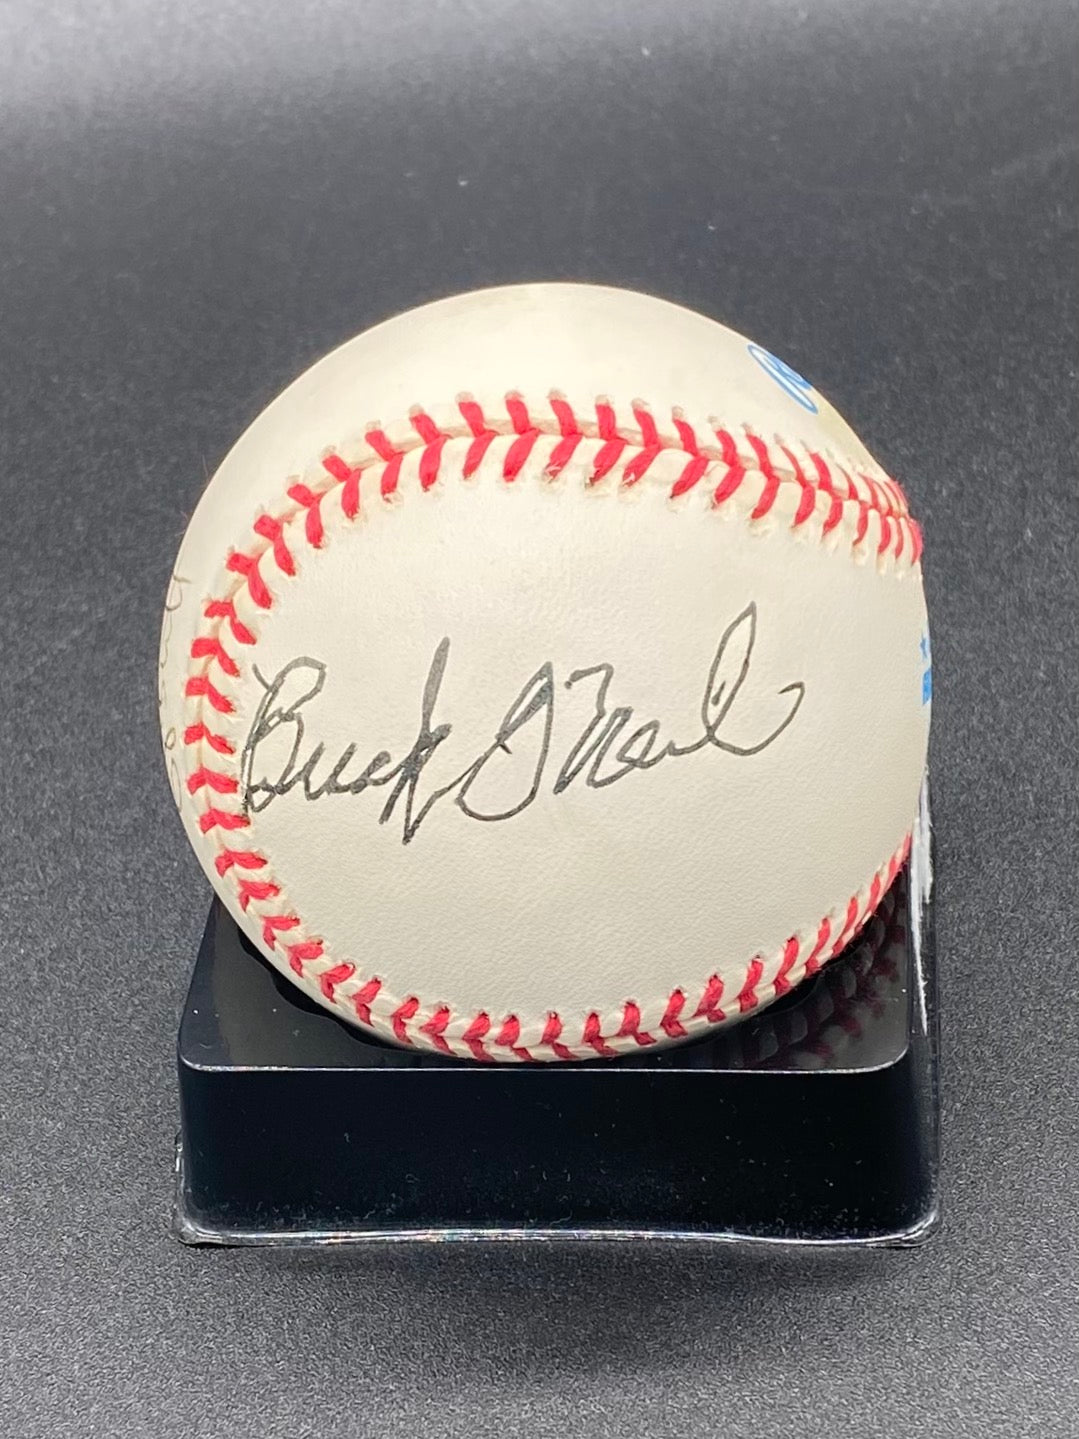 George Brett & Buck O'Neil Signed Baseball